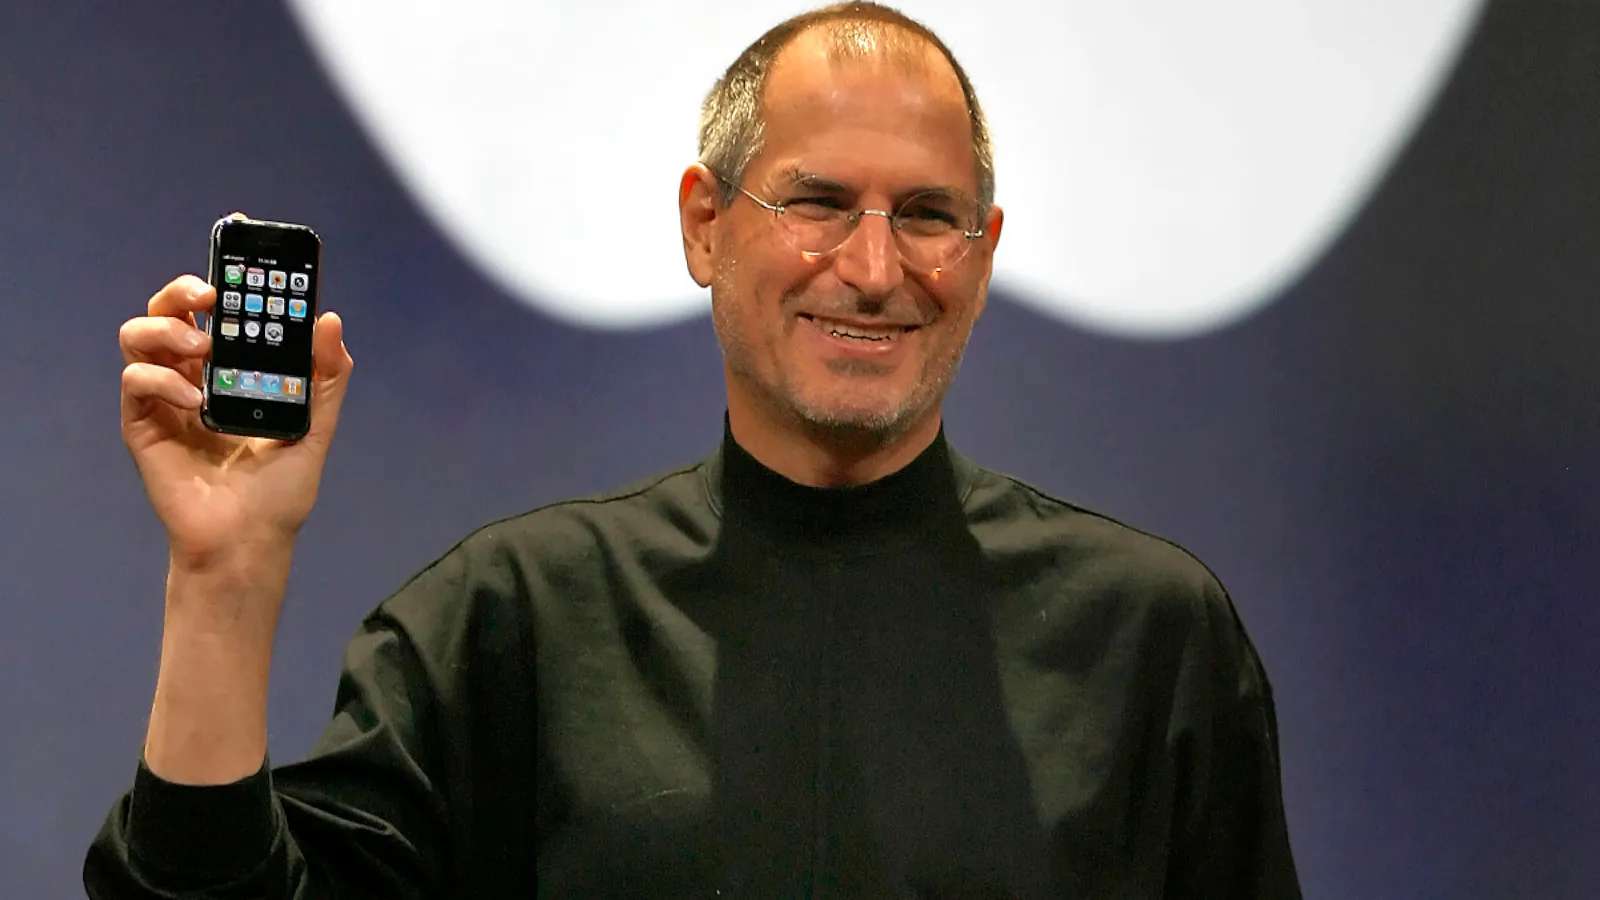 Steve Jobs da Apple puzzle online a partir de fotografia